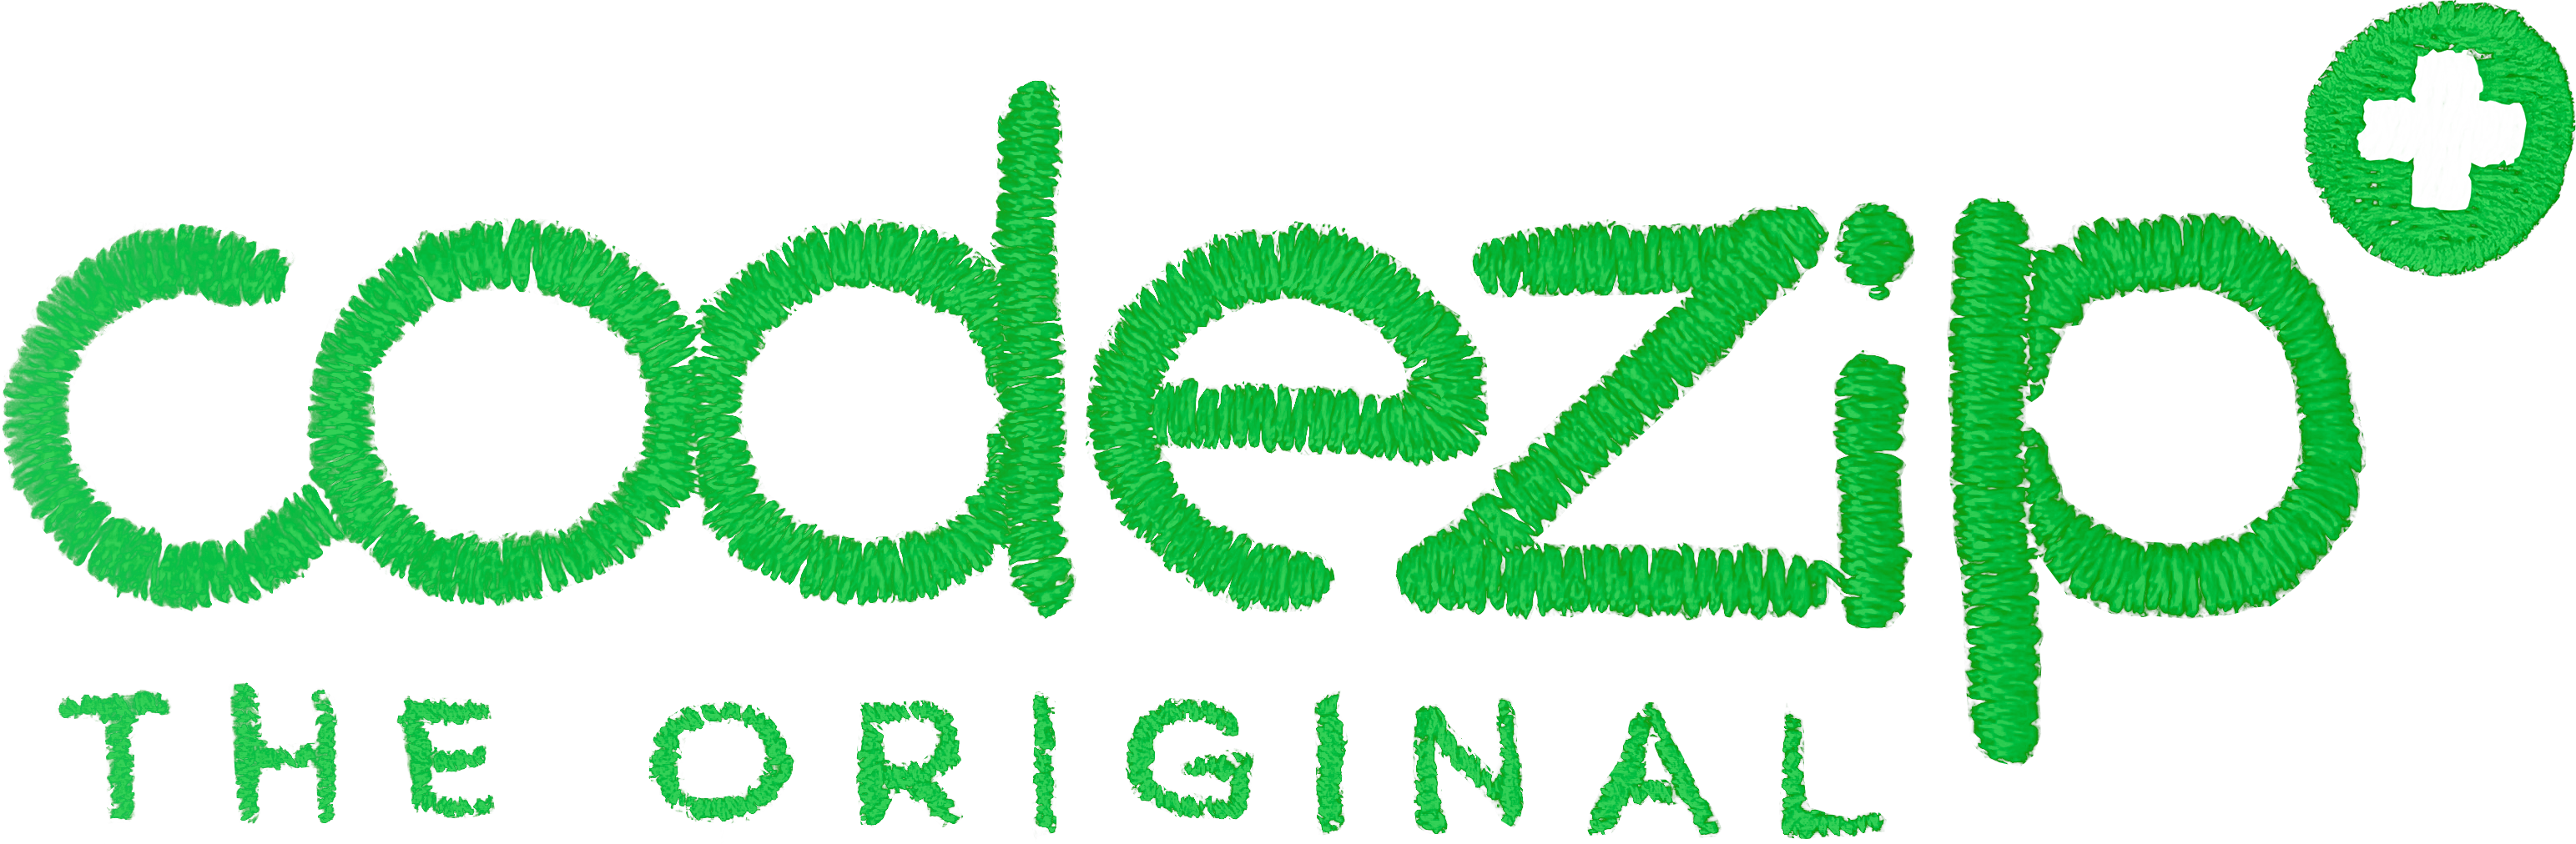 Logo green grass